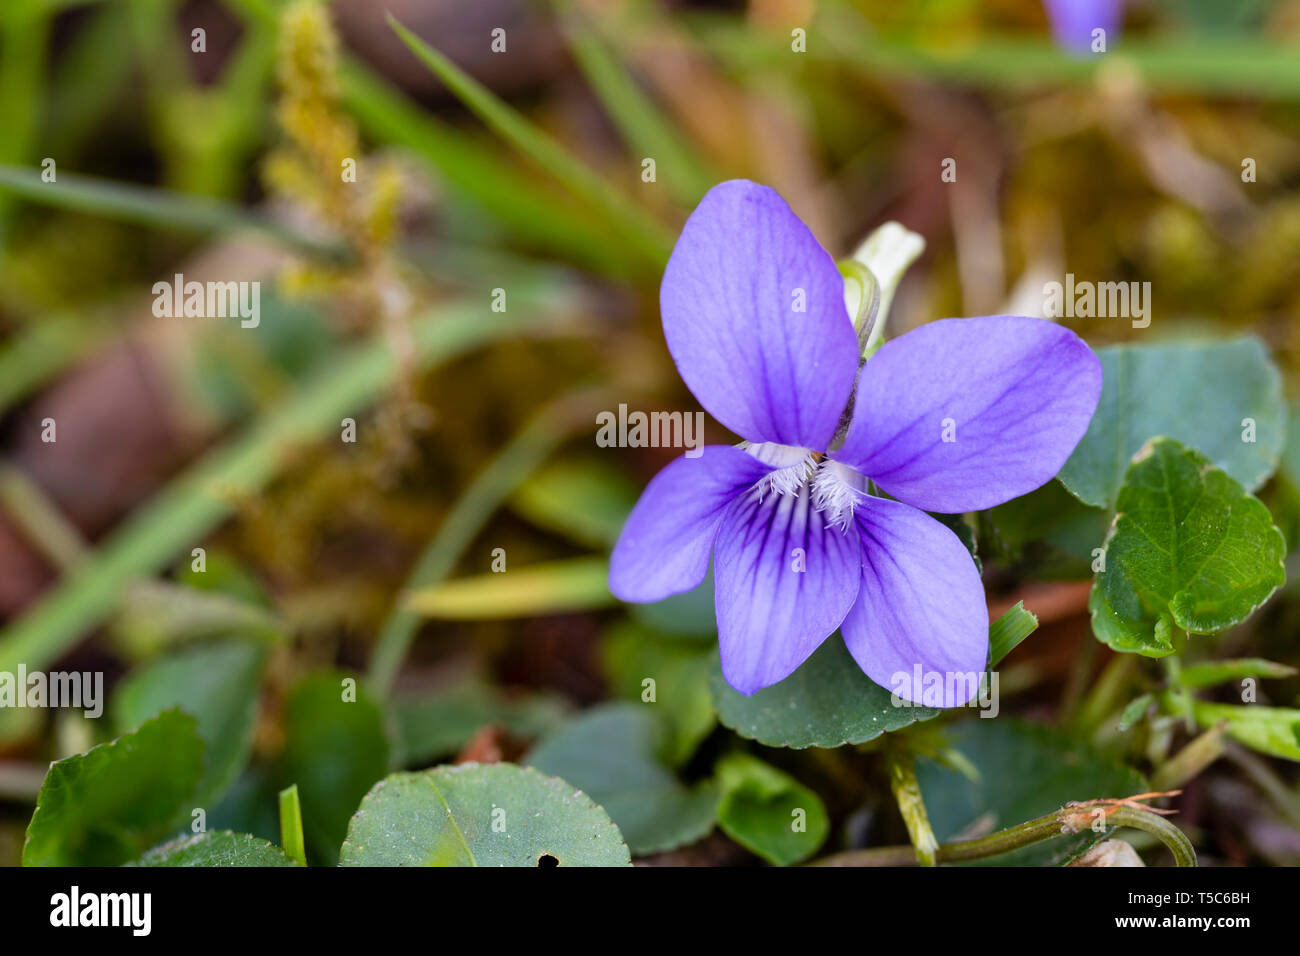 Chien commun Violette, Viola riviniana, grandissant dans l'gazon, Monmouthshire, Wales Banque D'Images